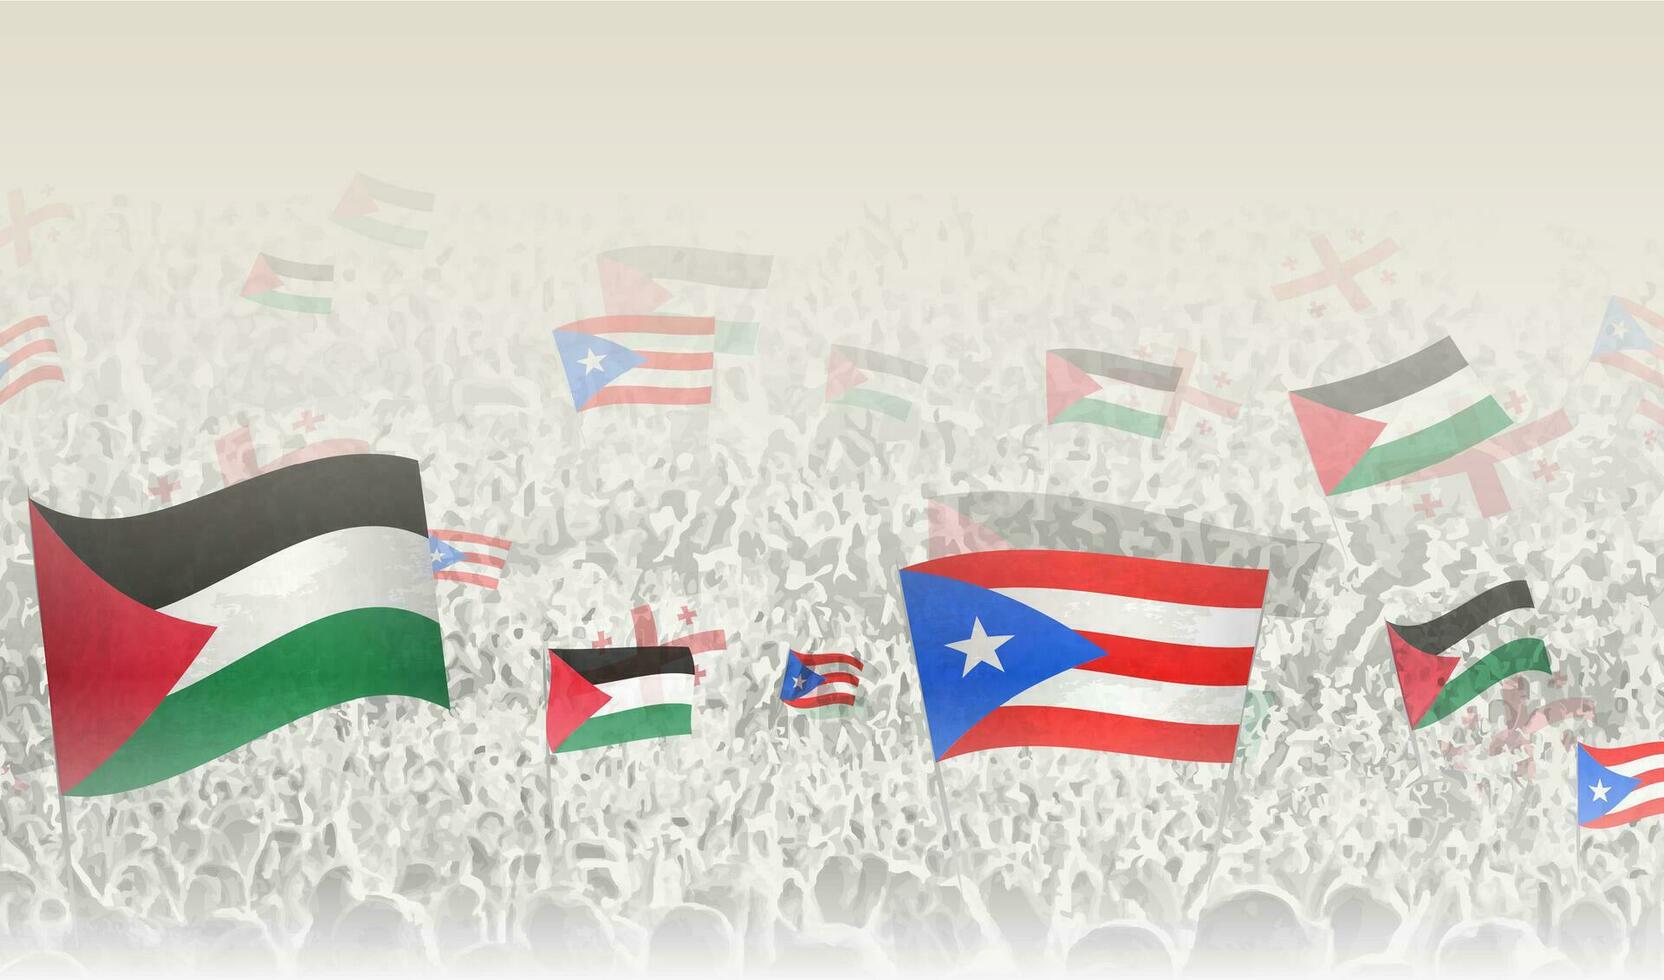 palestina och puerto rico flaggor i en folkmassan av glädjande människor. vektor